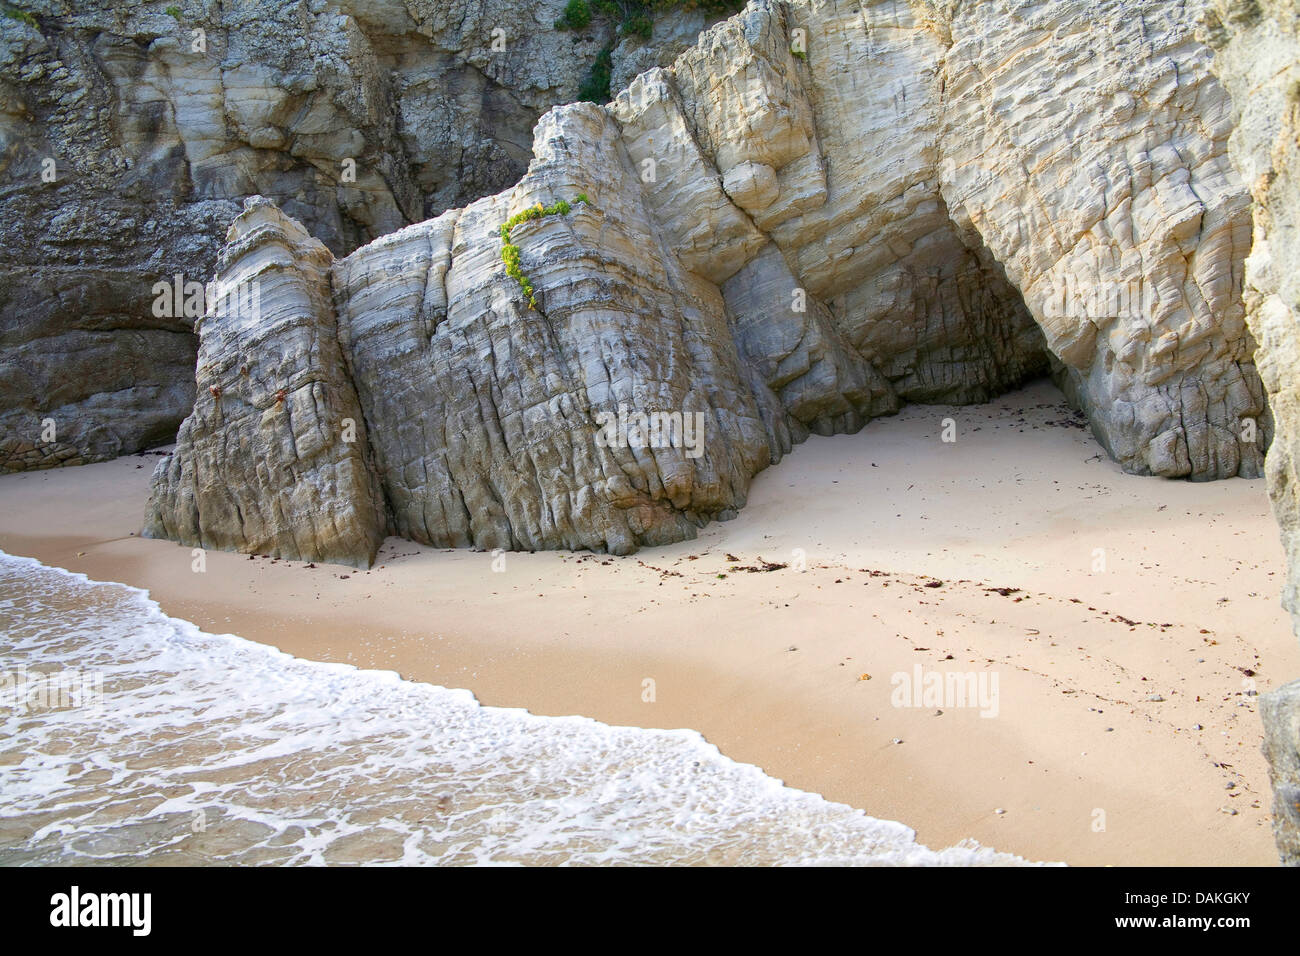 Costa rocciosa con baia sabbiosa, Francia, Brittany Foto Stock